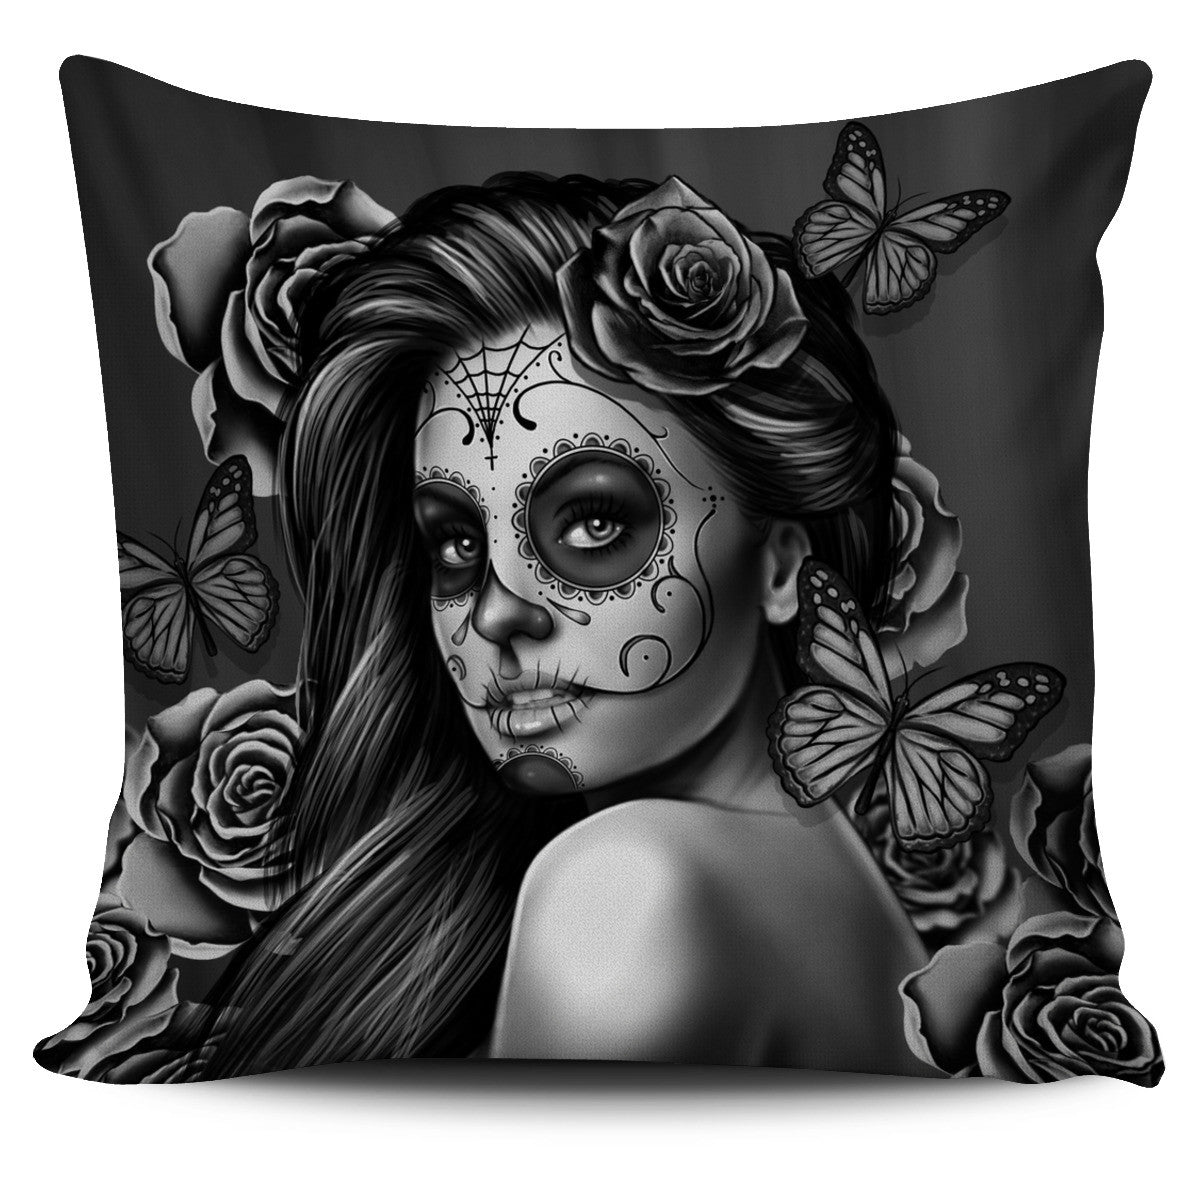 Tattoo Calavera Girl Pillow Cover - Collection 1